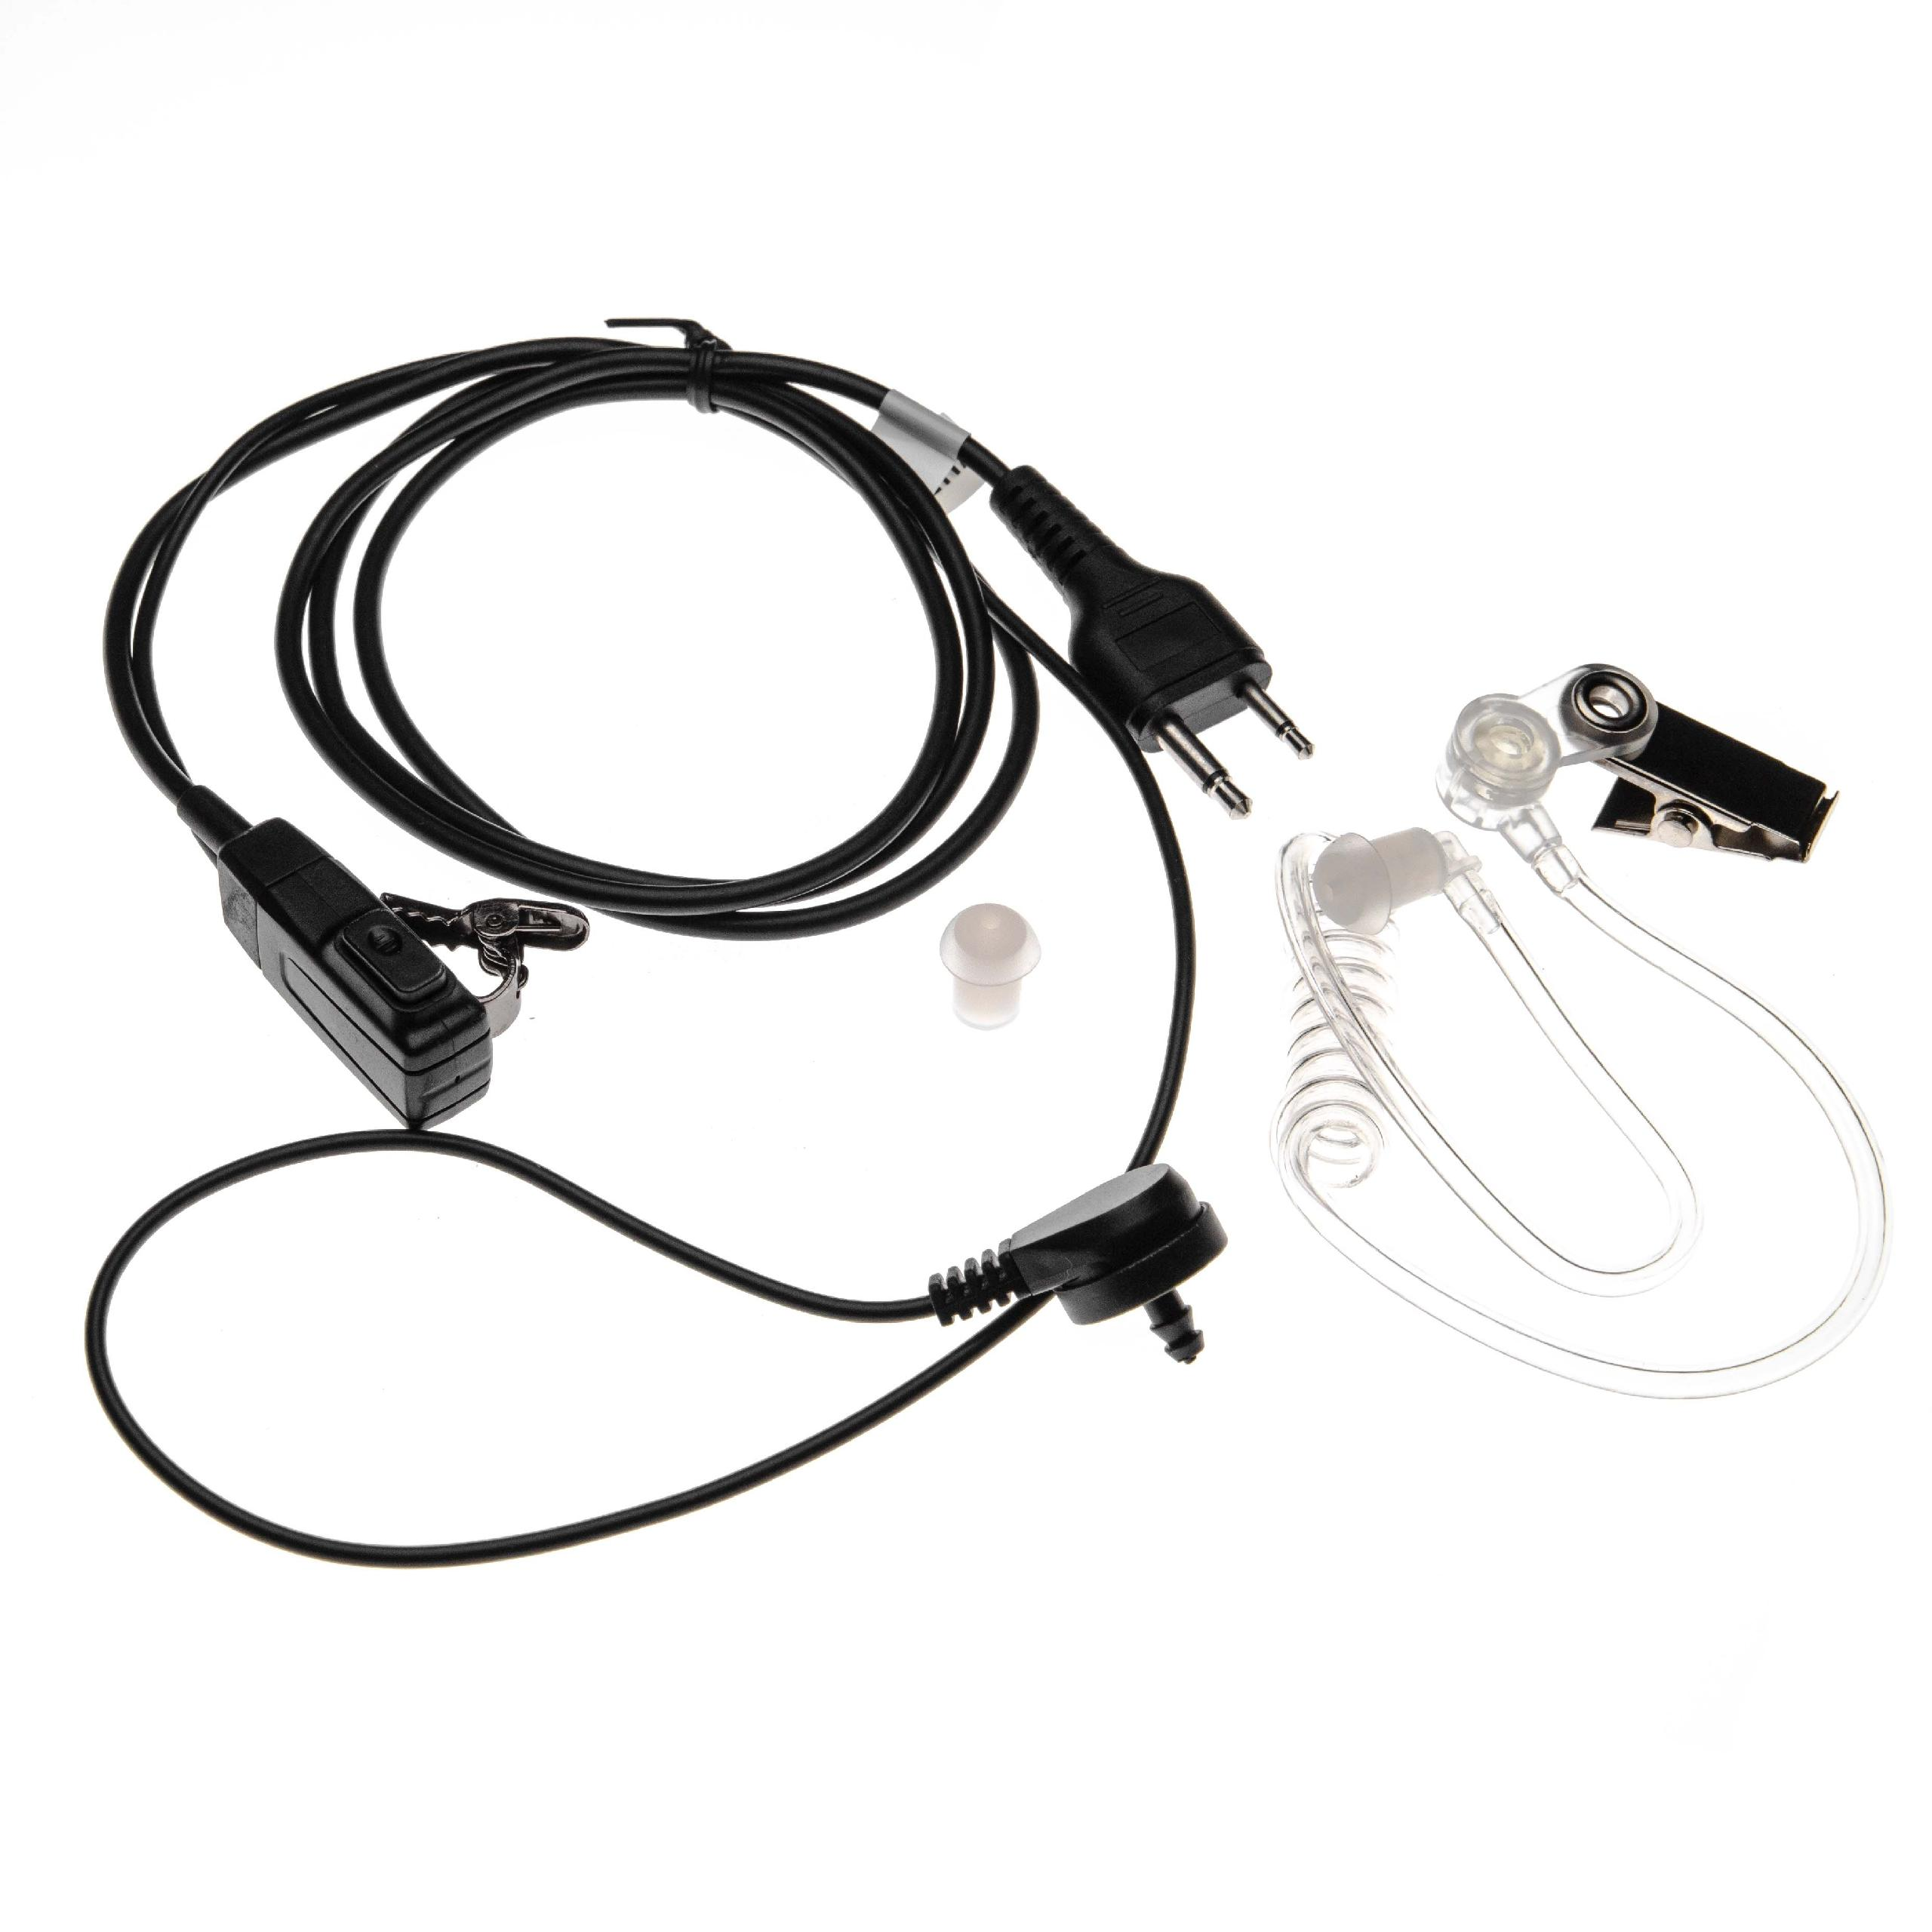 VHBW kompatibel mit schwarz Icom IC-F43, IC-F4031, IC-F43GS, IC-F4026, IC-F4101, Headset On-ear IC-F43GT, / transparent IC-F43TR, IC-F4062